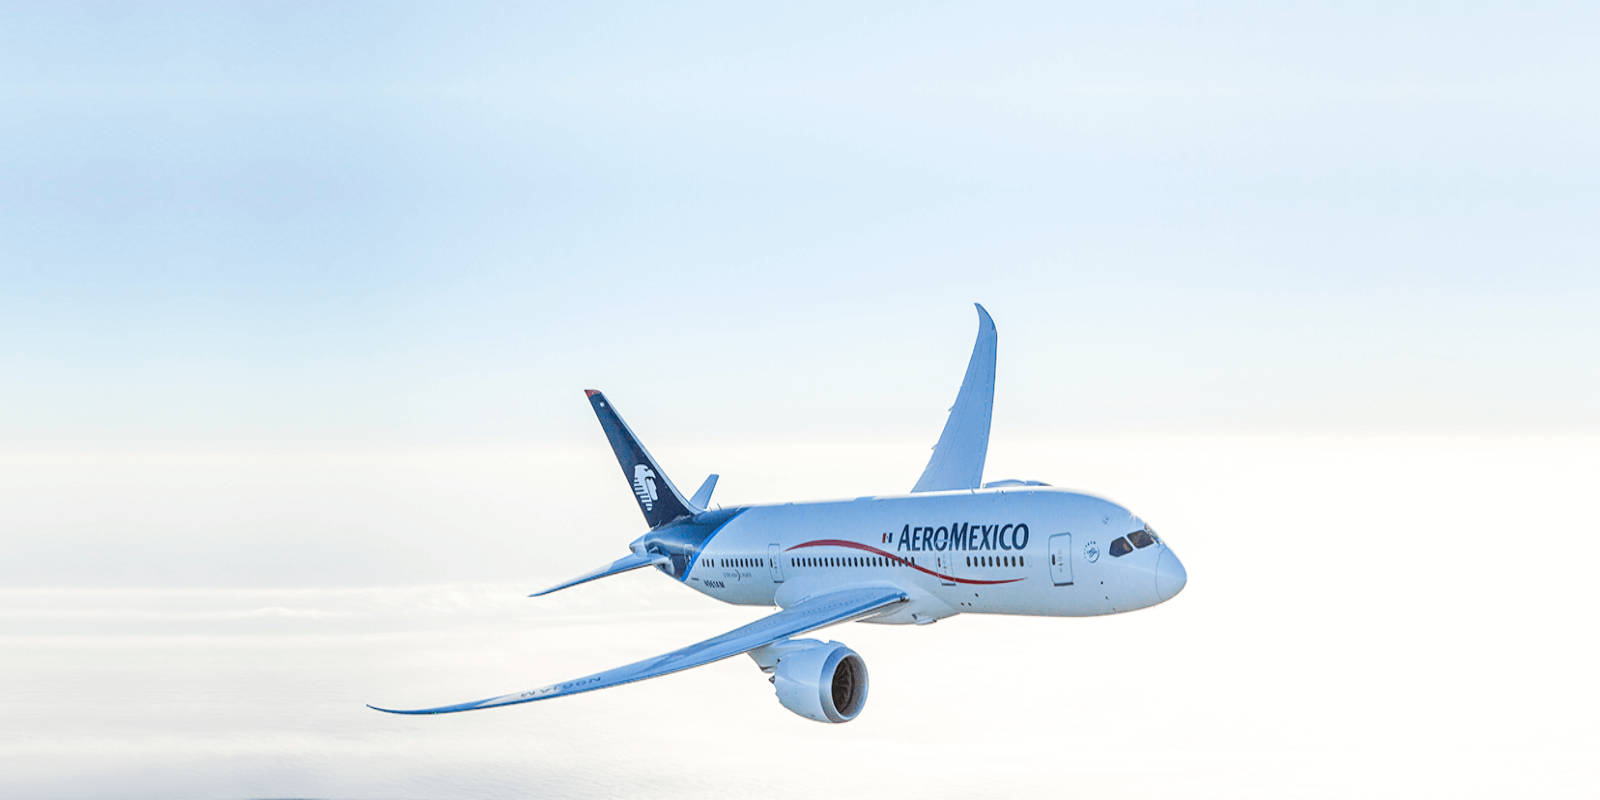 Aeromexicoflugzeug Fliegt In Einem Klaren Himmel Wallpaper